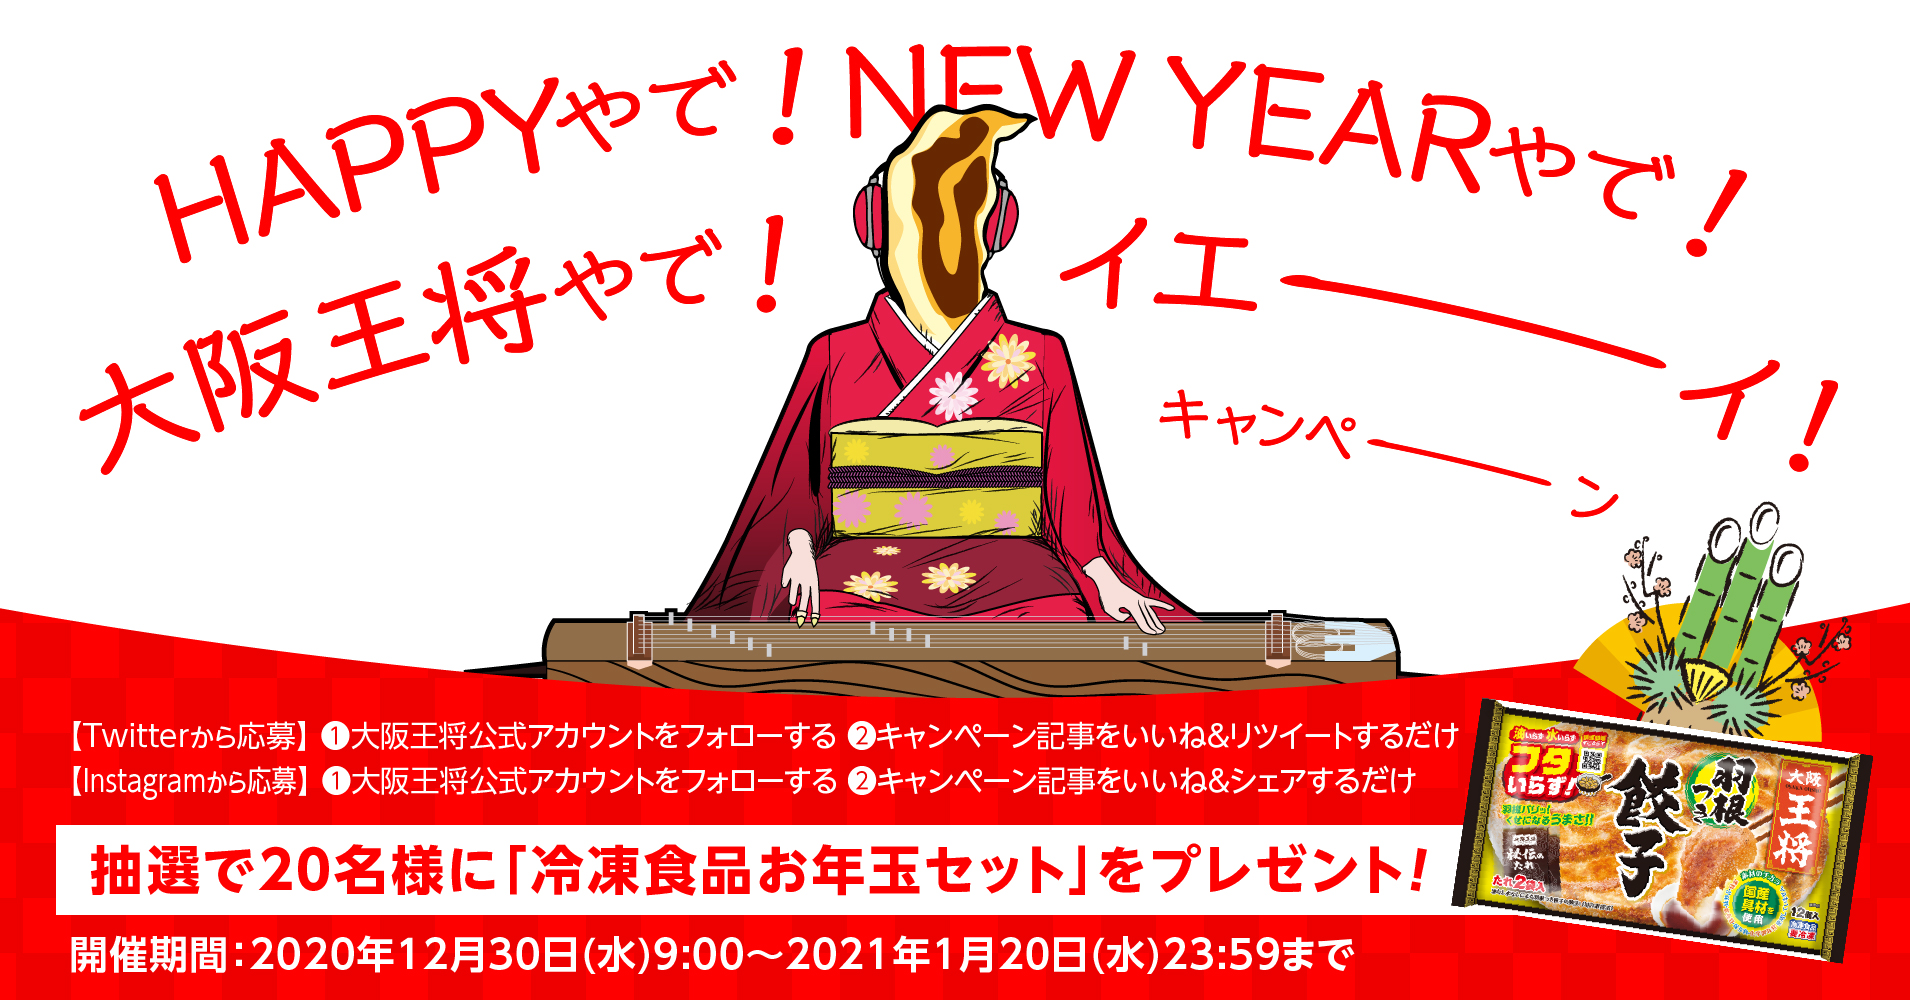 名様に冷凍食品セットをプレゼント 大阪王将公式twitter Instagram同時開催 Happyやで New Yearやで 大阪王将やで イエーイ キャンペーン を12月30日からスタート イートアンドhdのプレスリリース